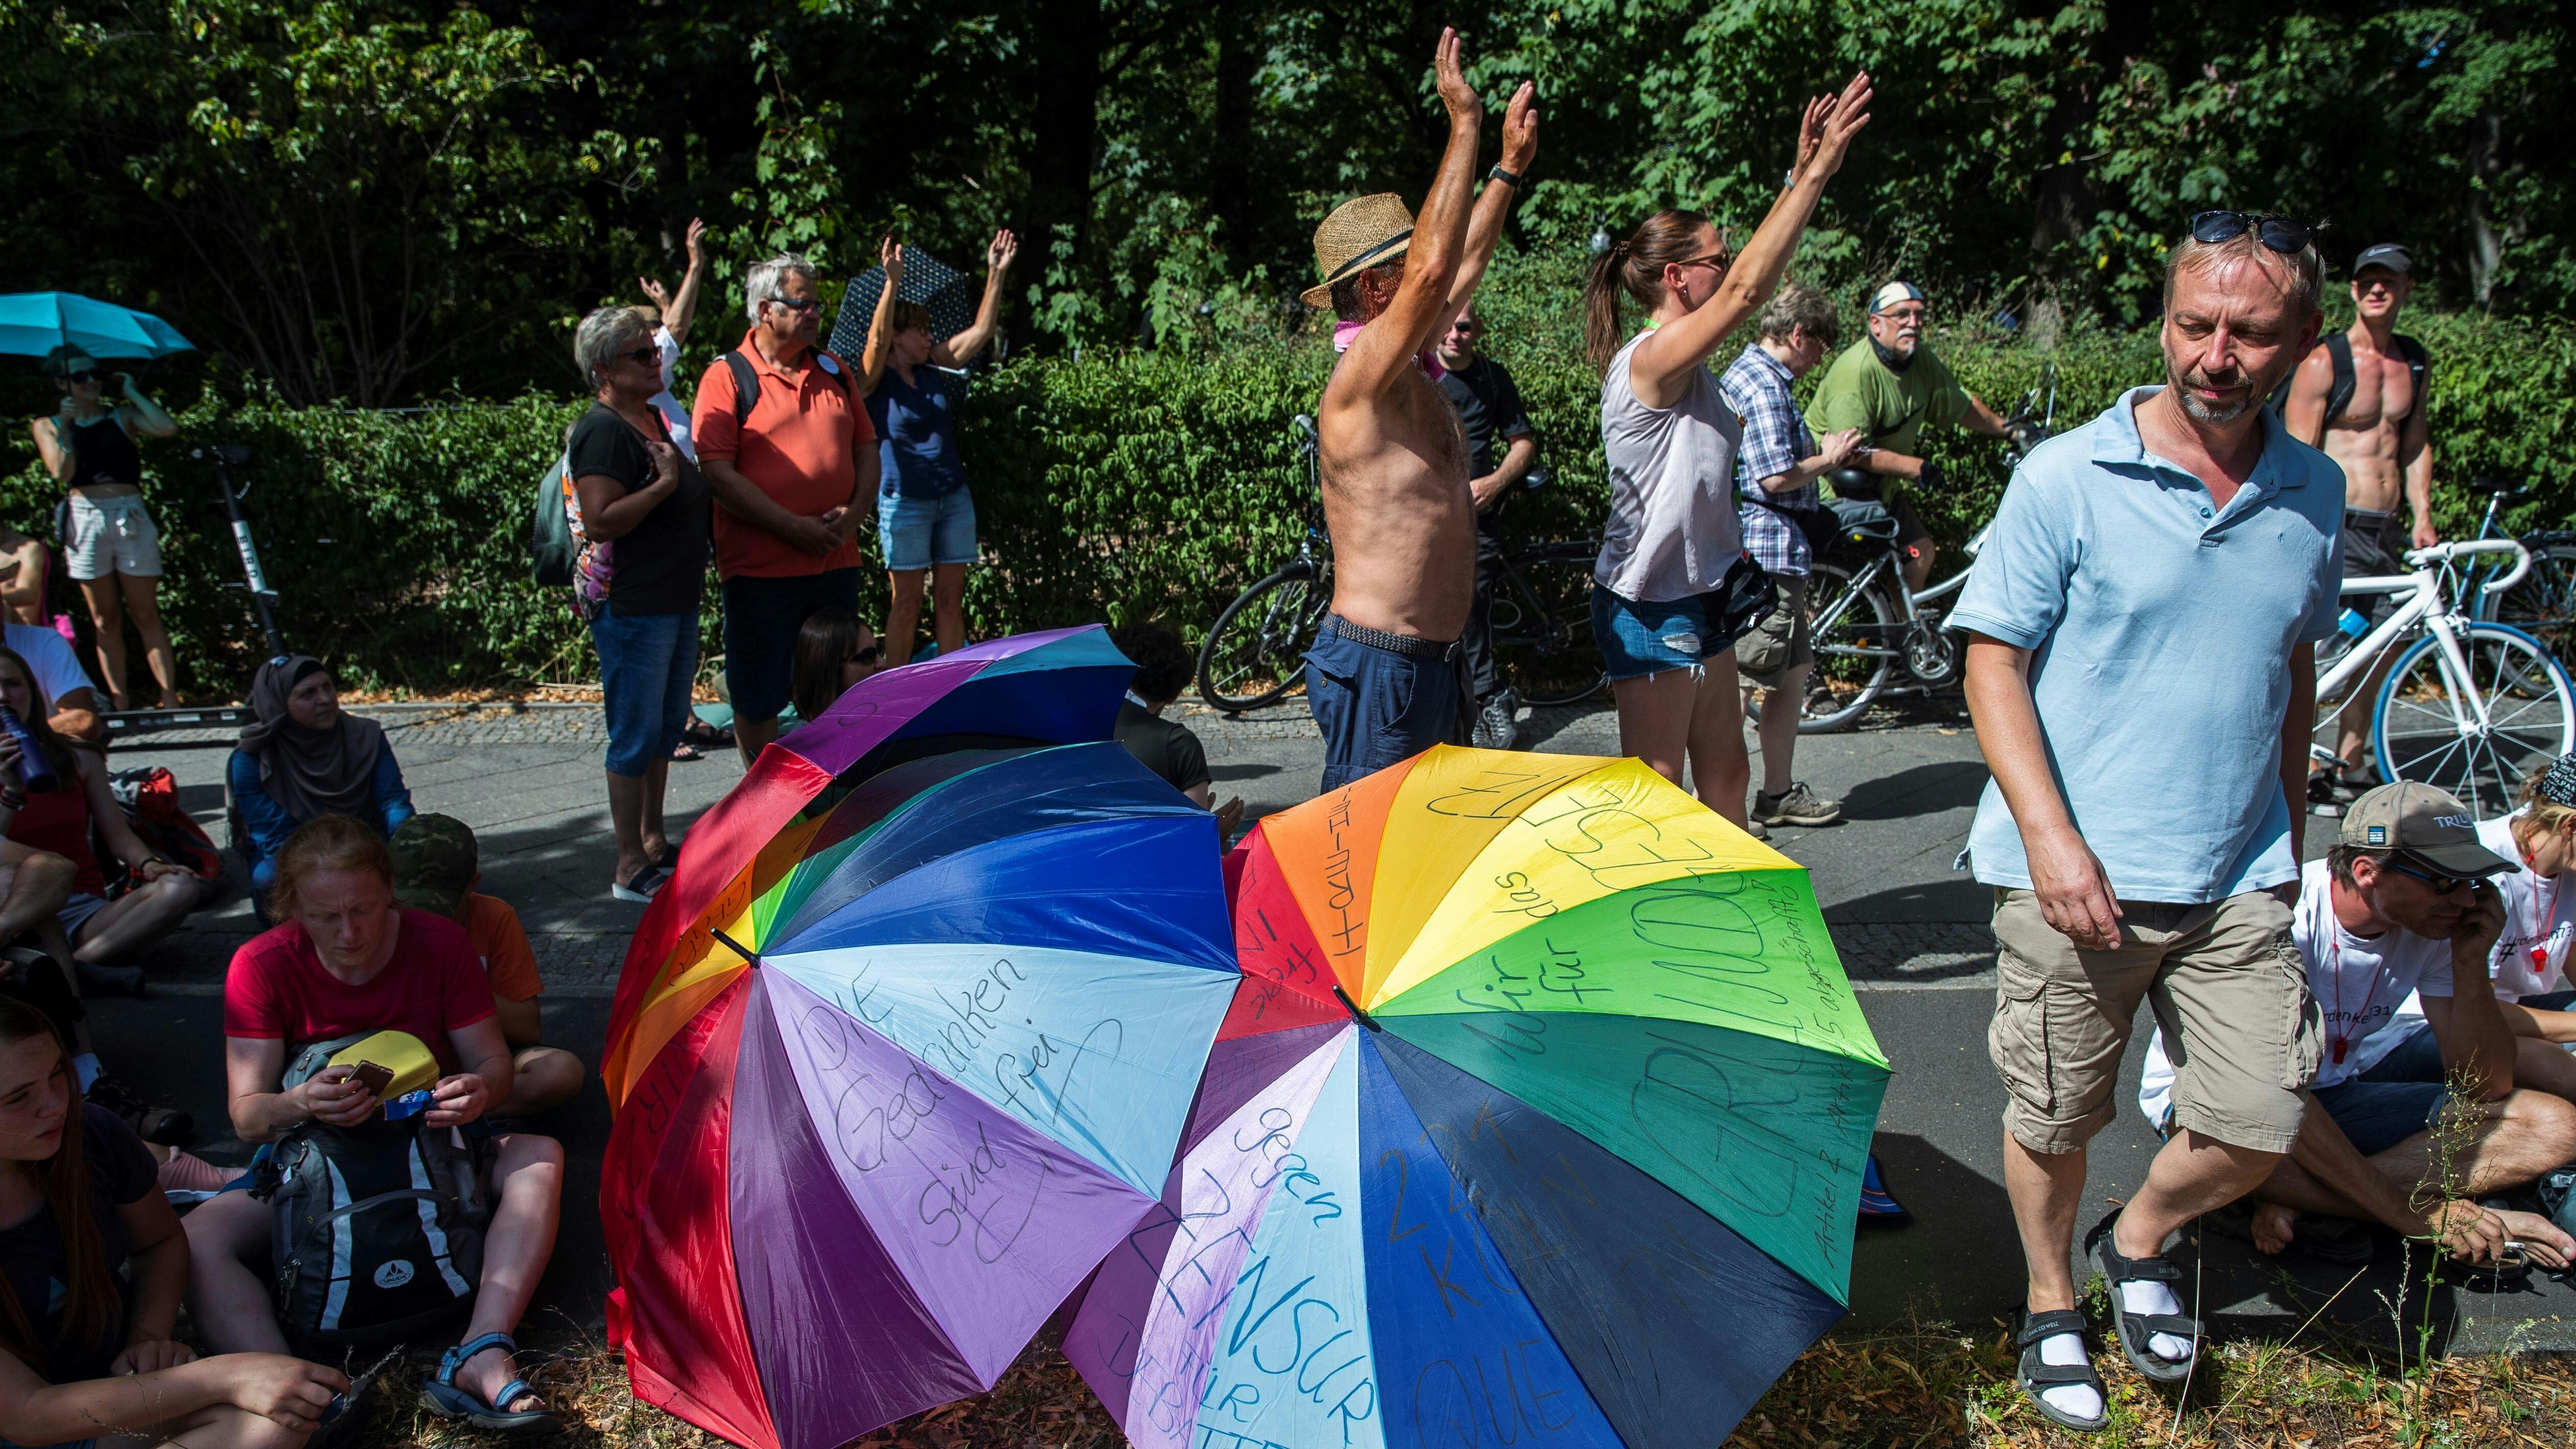 Corona-Demonstranten stehen mit erhobenen Händen neben regenbogenfarbenen Regenschirmen.